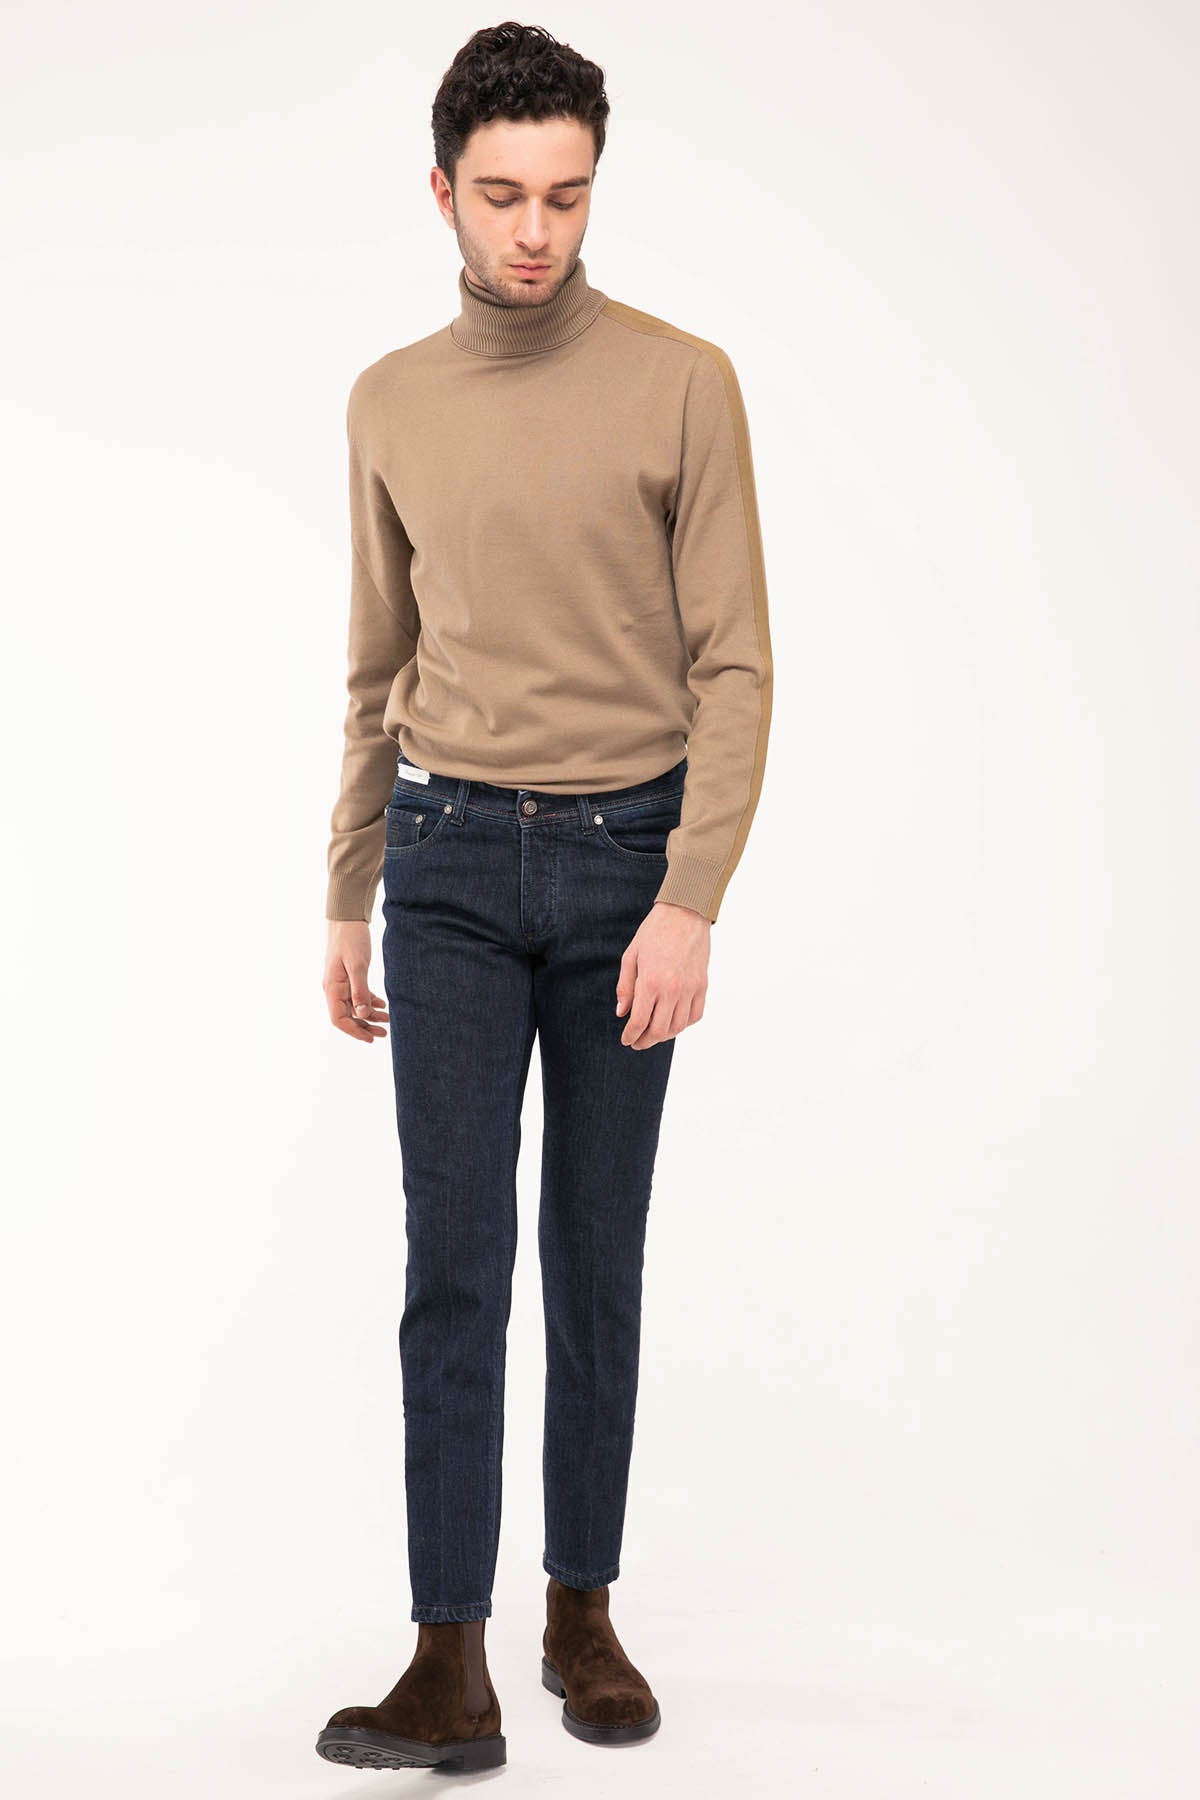 Richard J. Brown Cortina Kaşmirli Jeans-Libas Trendy Fashion Store